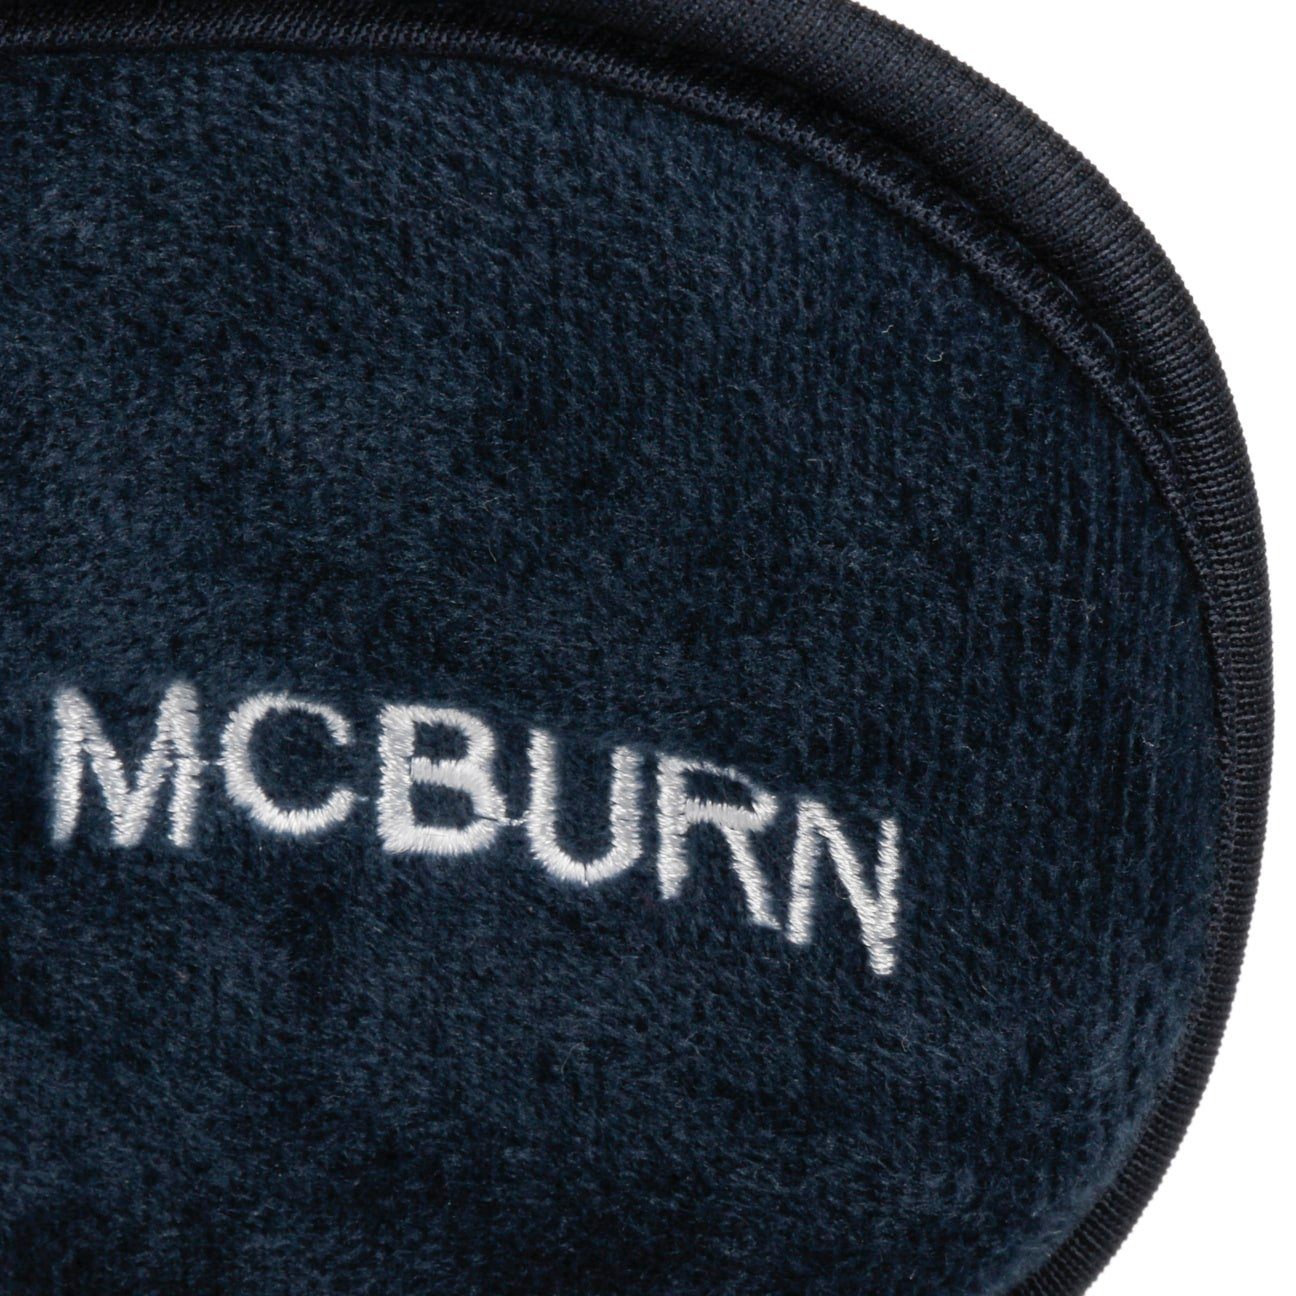 (1-St) Ohrenwärmer blau Ohrenschützer McBurn